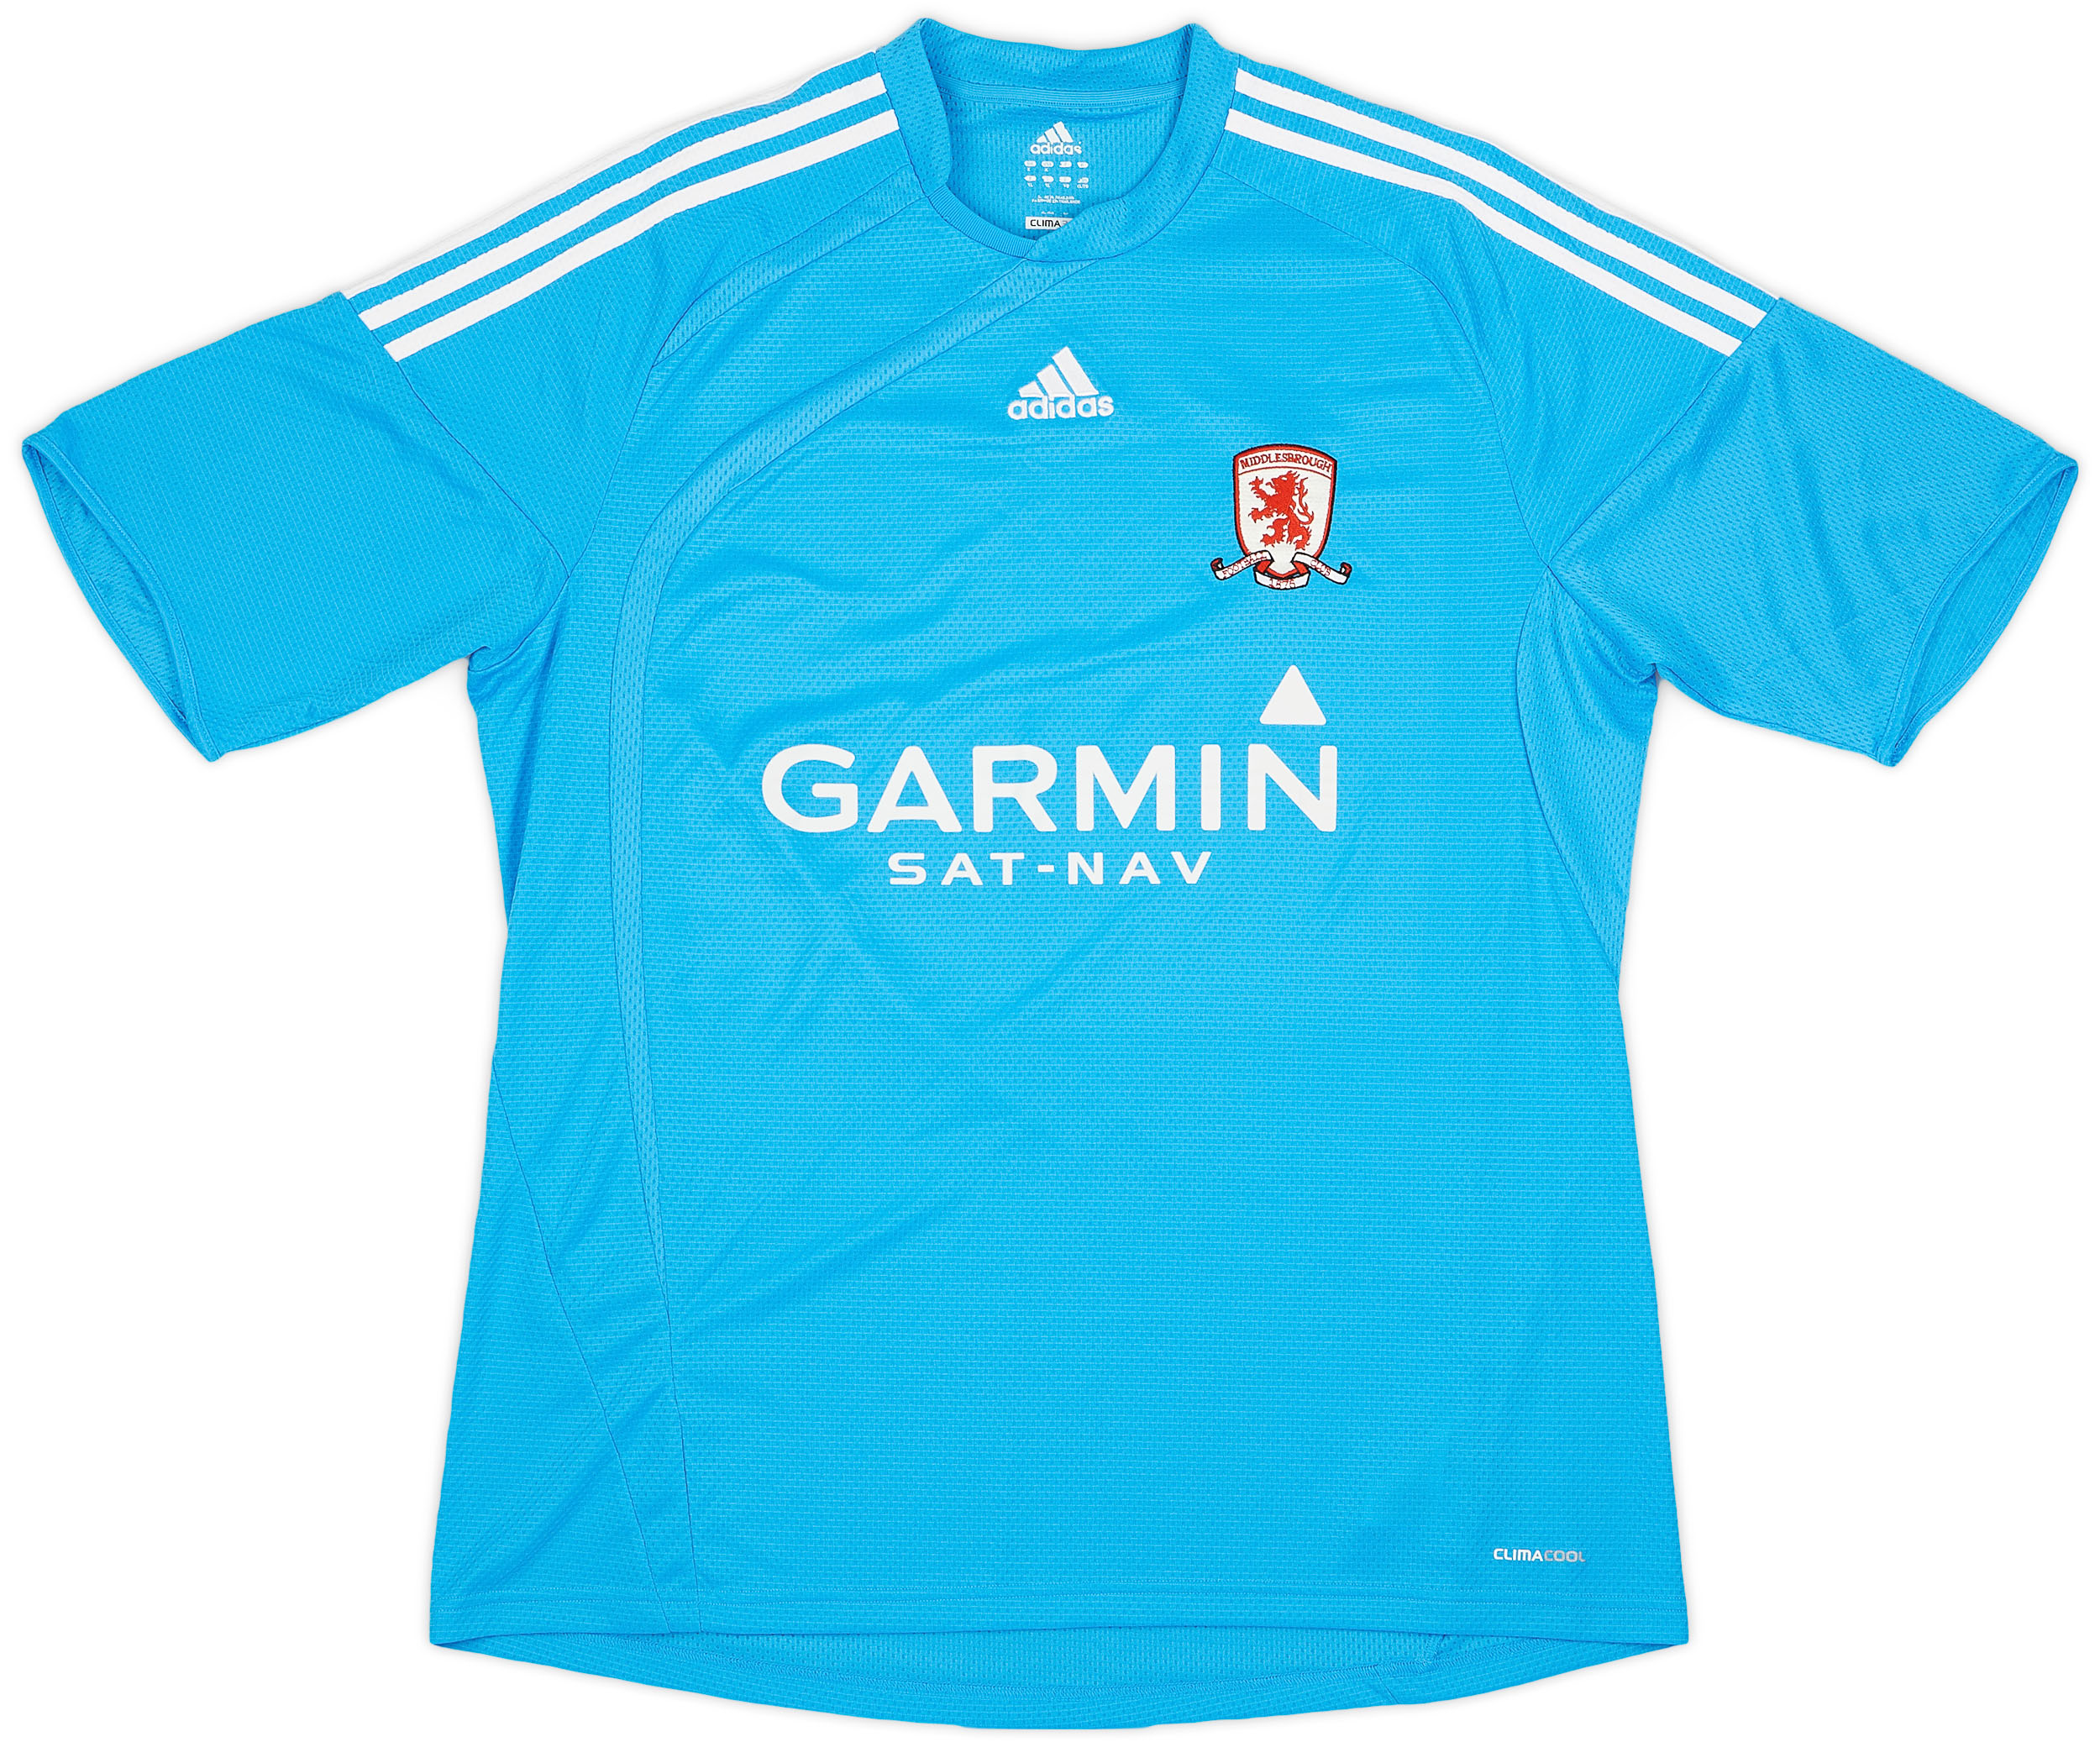 Middlesbrough  Away shirt (Original)